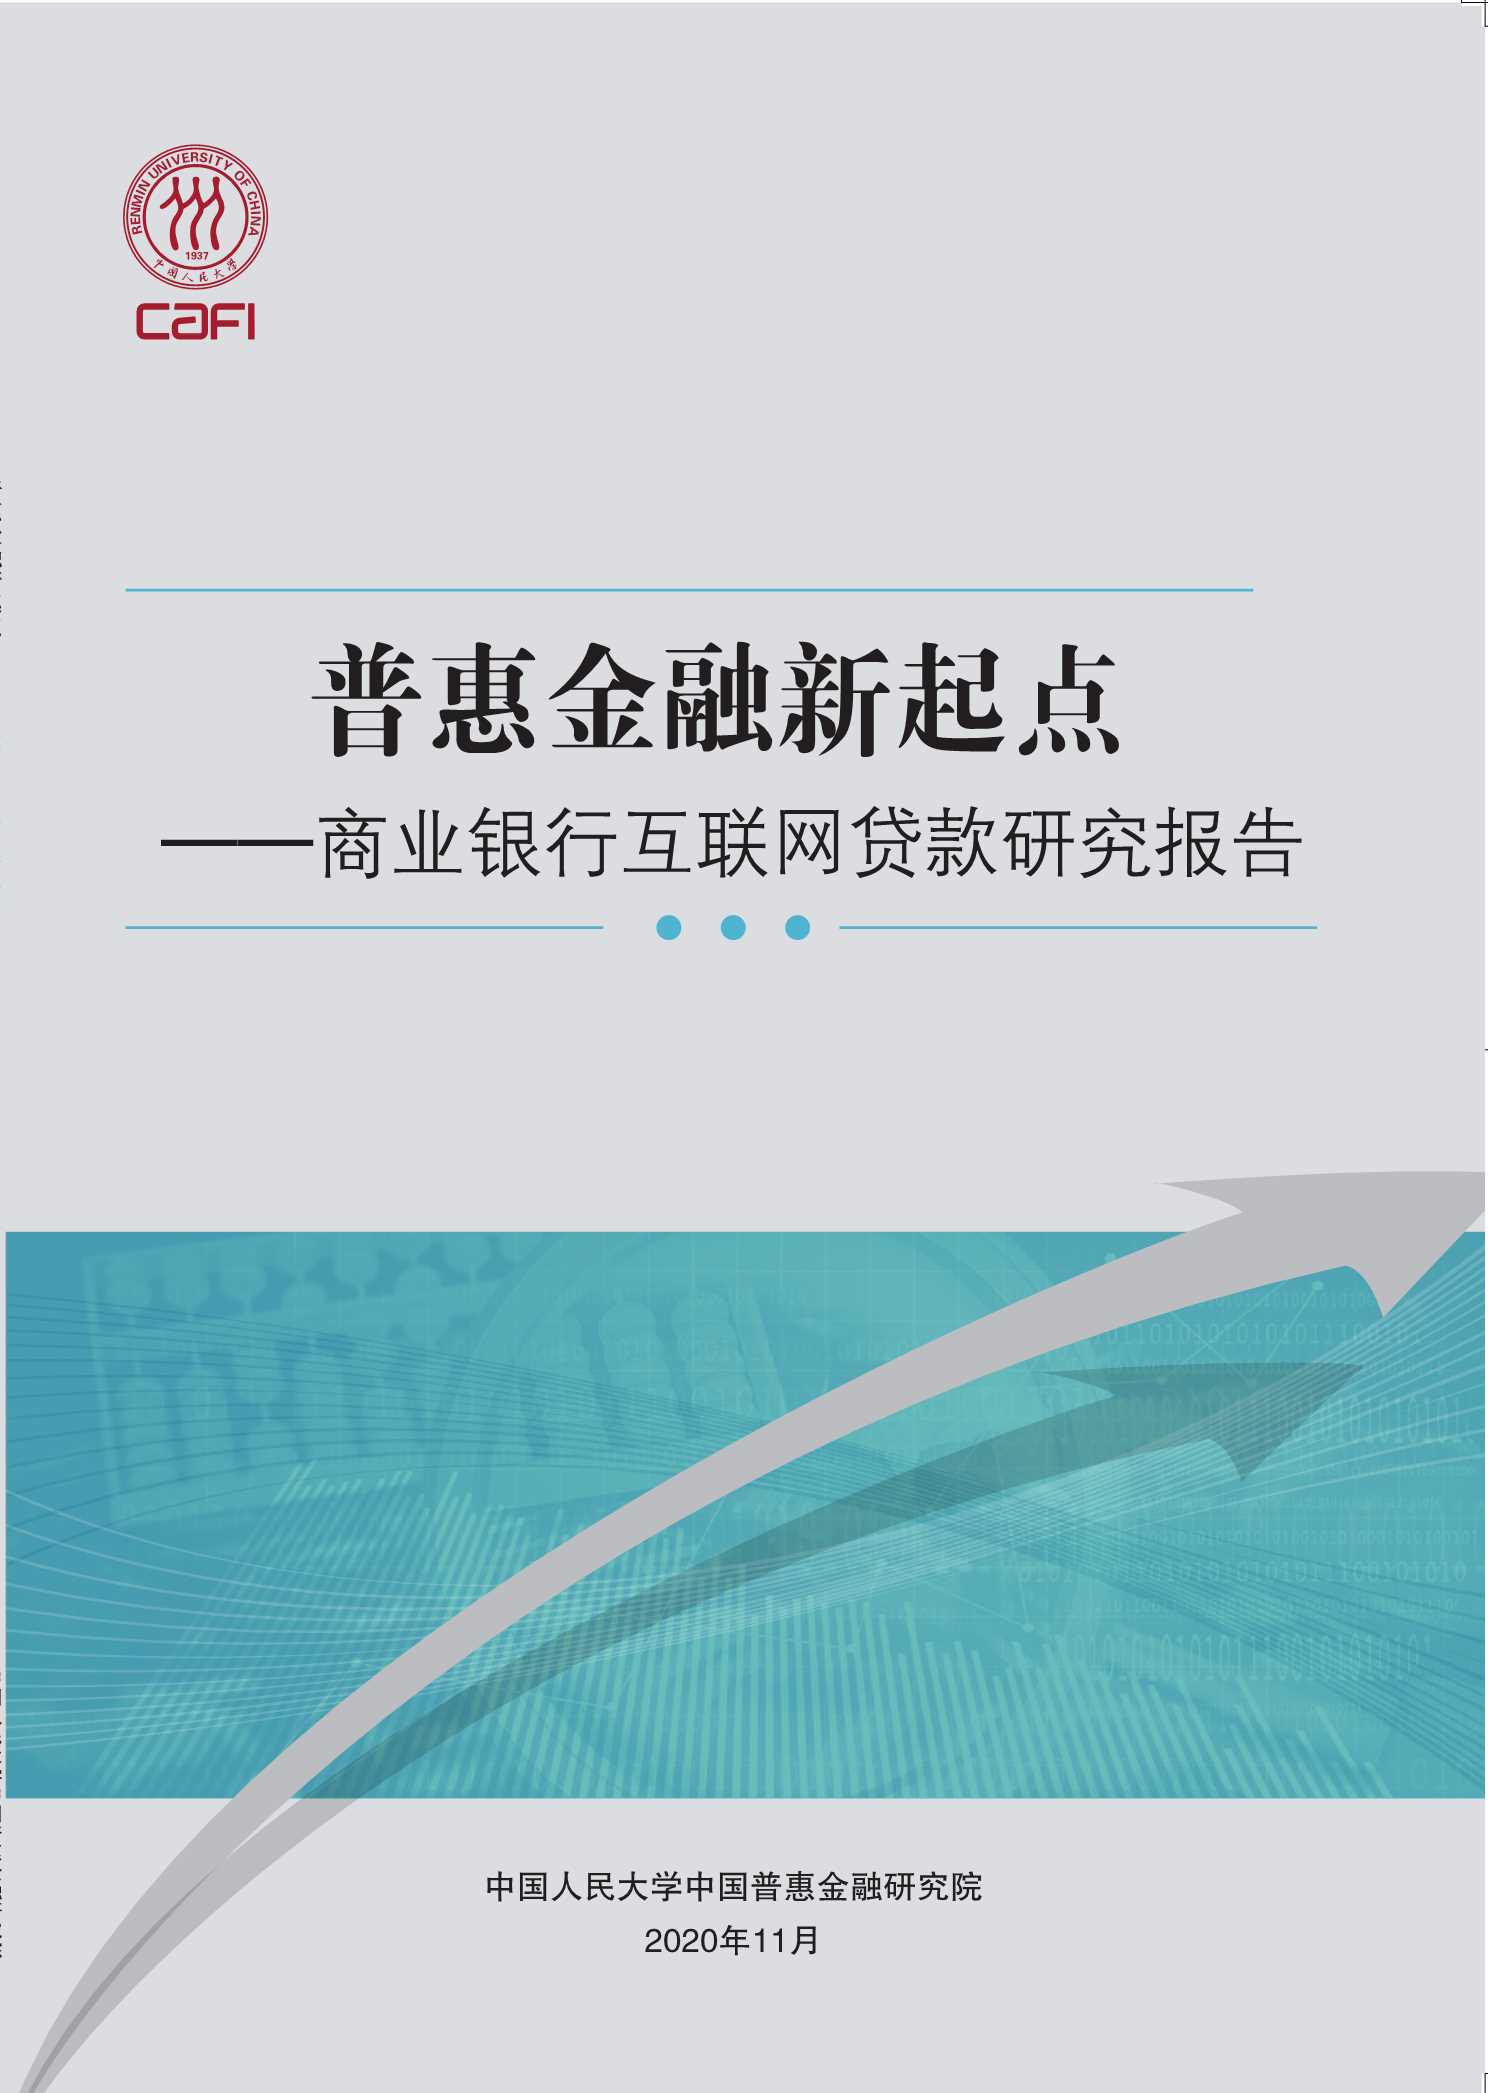 人民大学普惠金融研究院-商业银行互联网贷款研究报告-2021.05-49页